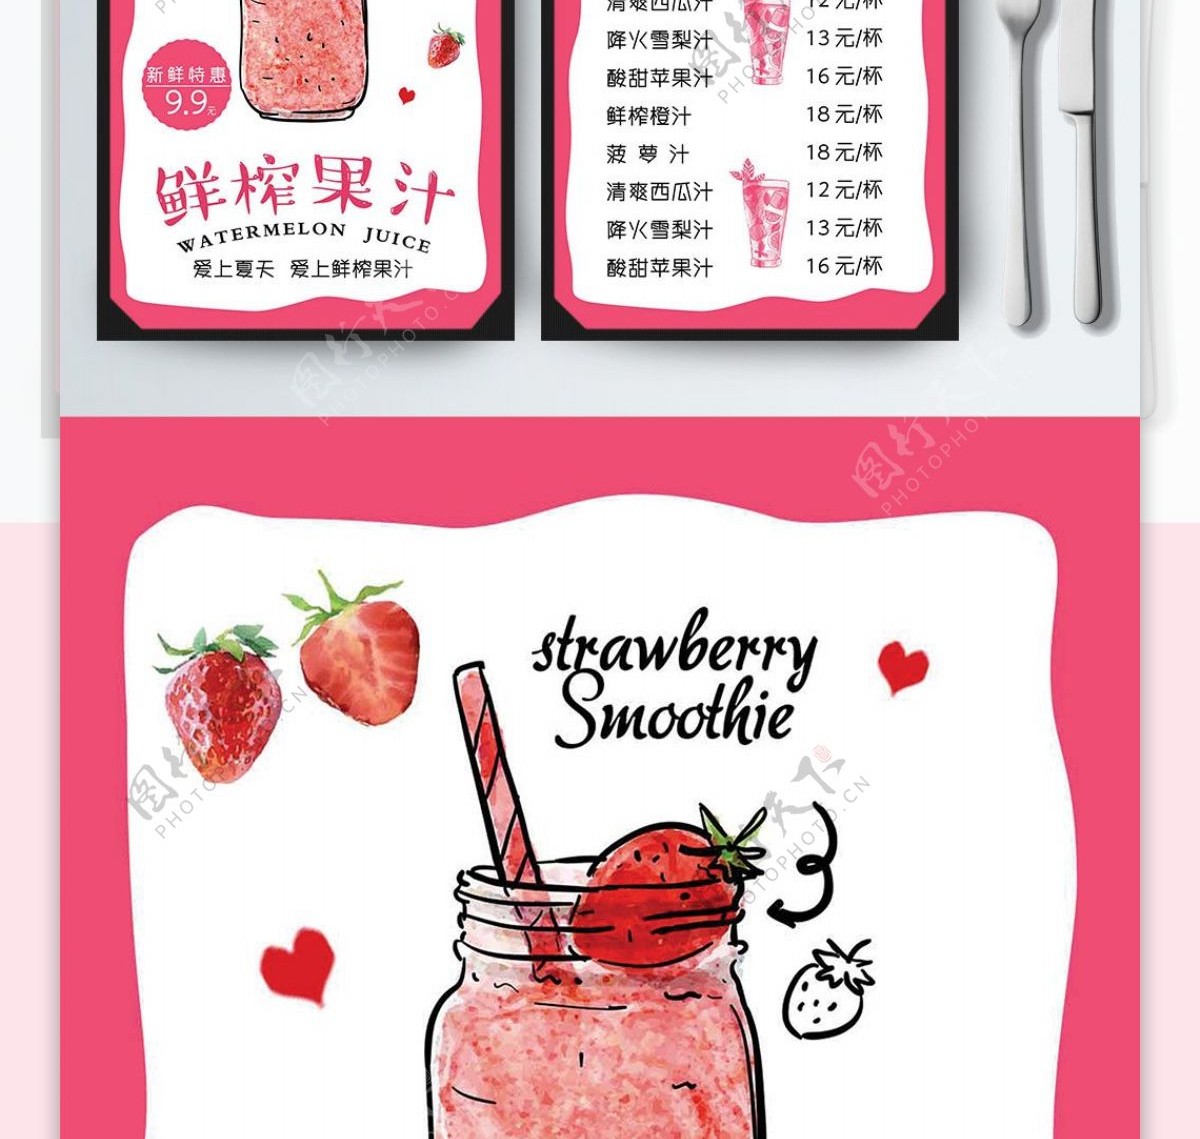 粉色简约清新卡通美味鲜榨果汁菜谱设计